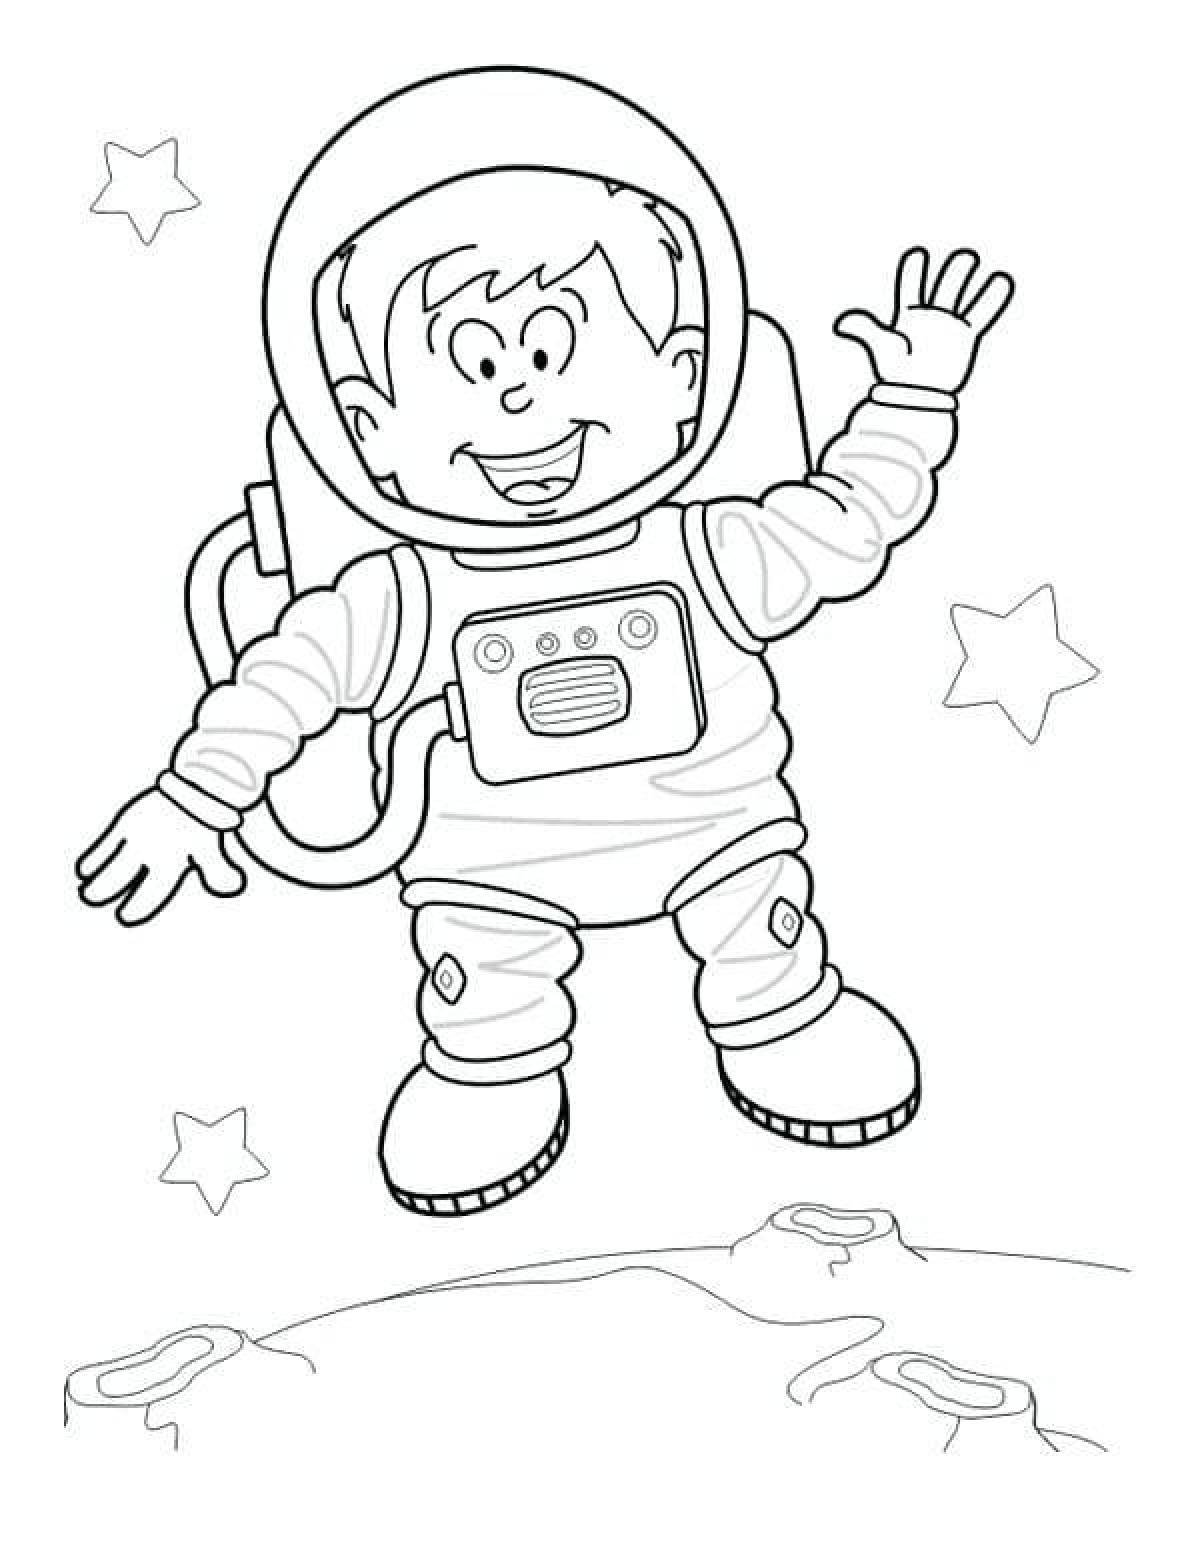 Распечатать космонавта для поделки. Космонавт раскраска. Раскраска для малышей. Космос. Раскраска. В космосе. Космонавт раскраска для детей.